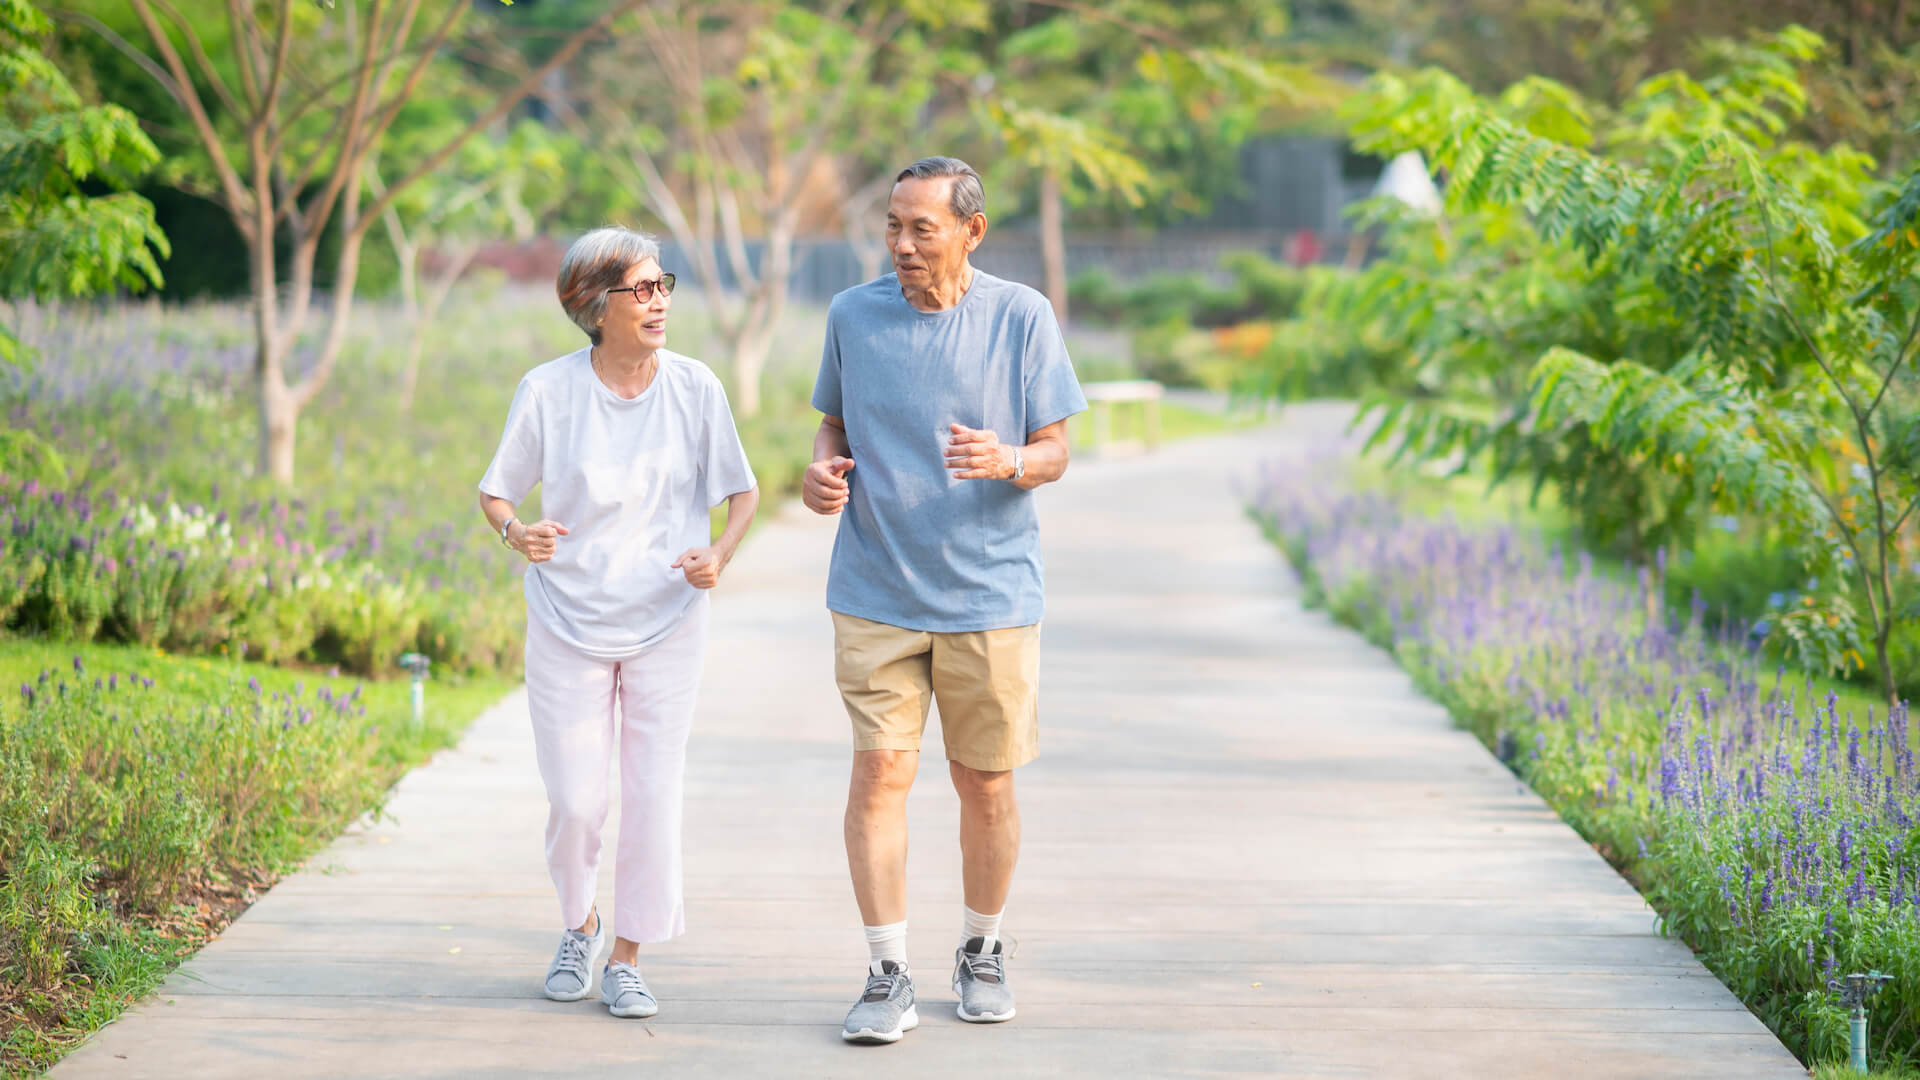 Người lớn tuổi có thể rèn luyện thể thao nhẹ nhàng để có sức khoẻ dẻo dai